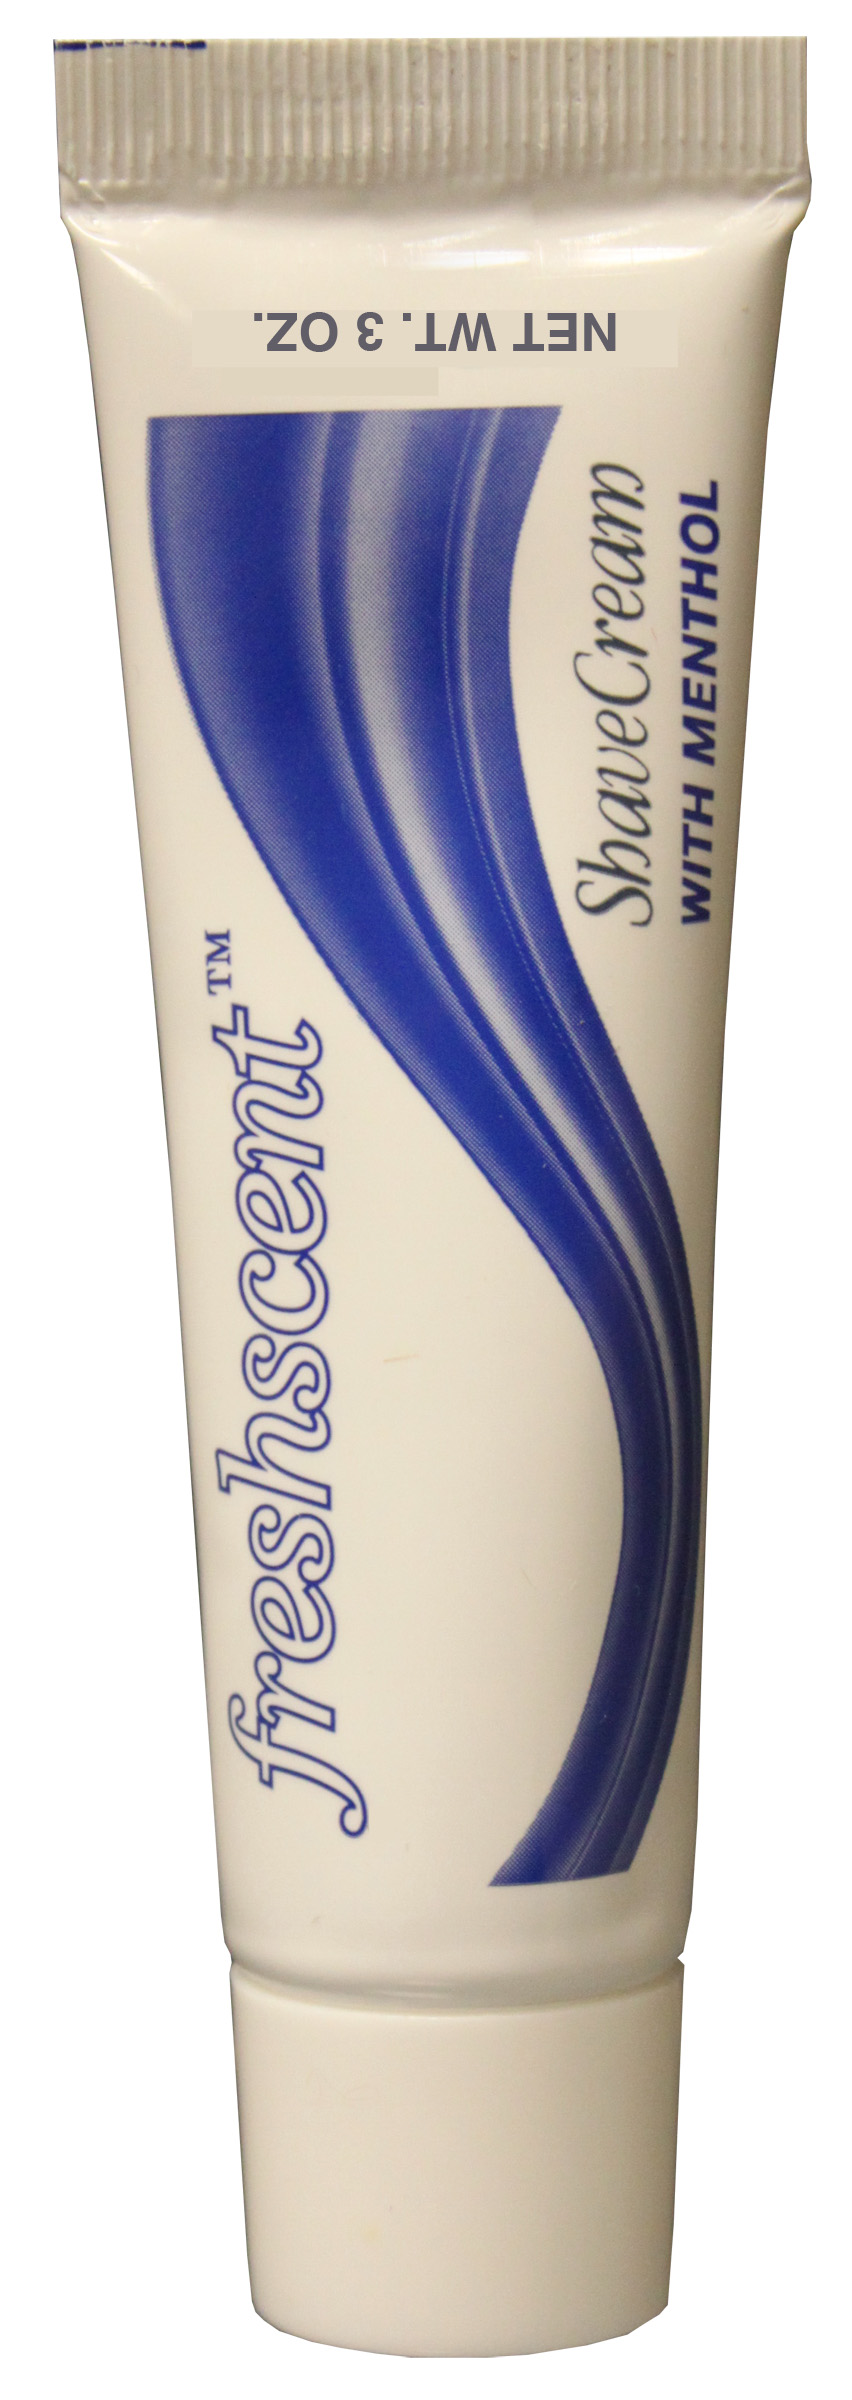 Freshscent 3 oz. Brushless Shaving Cream